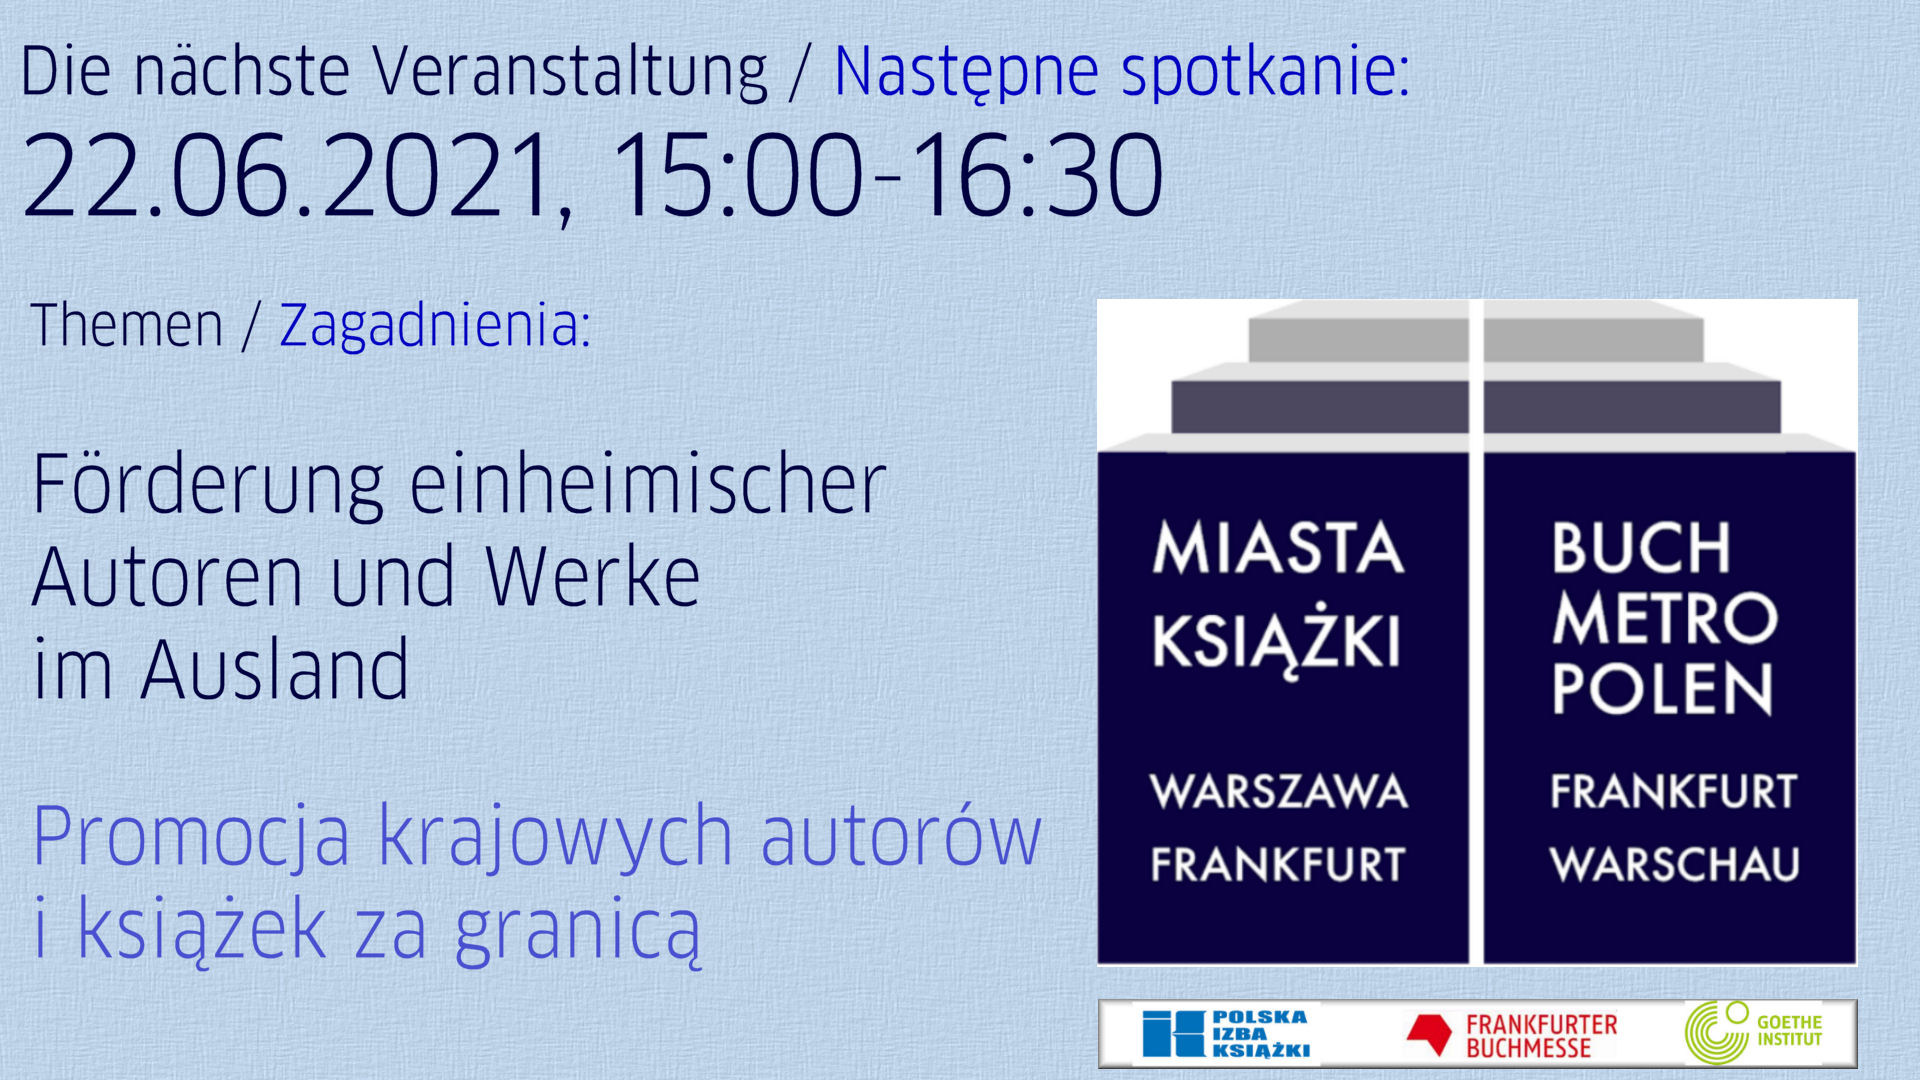 Miasta Książki - Warszawa Frankfurt - siódme spotkanie online w dniu 22.06. 21